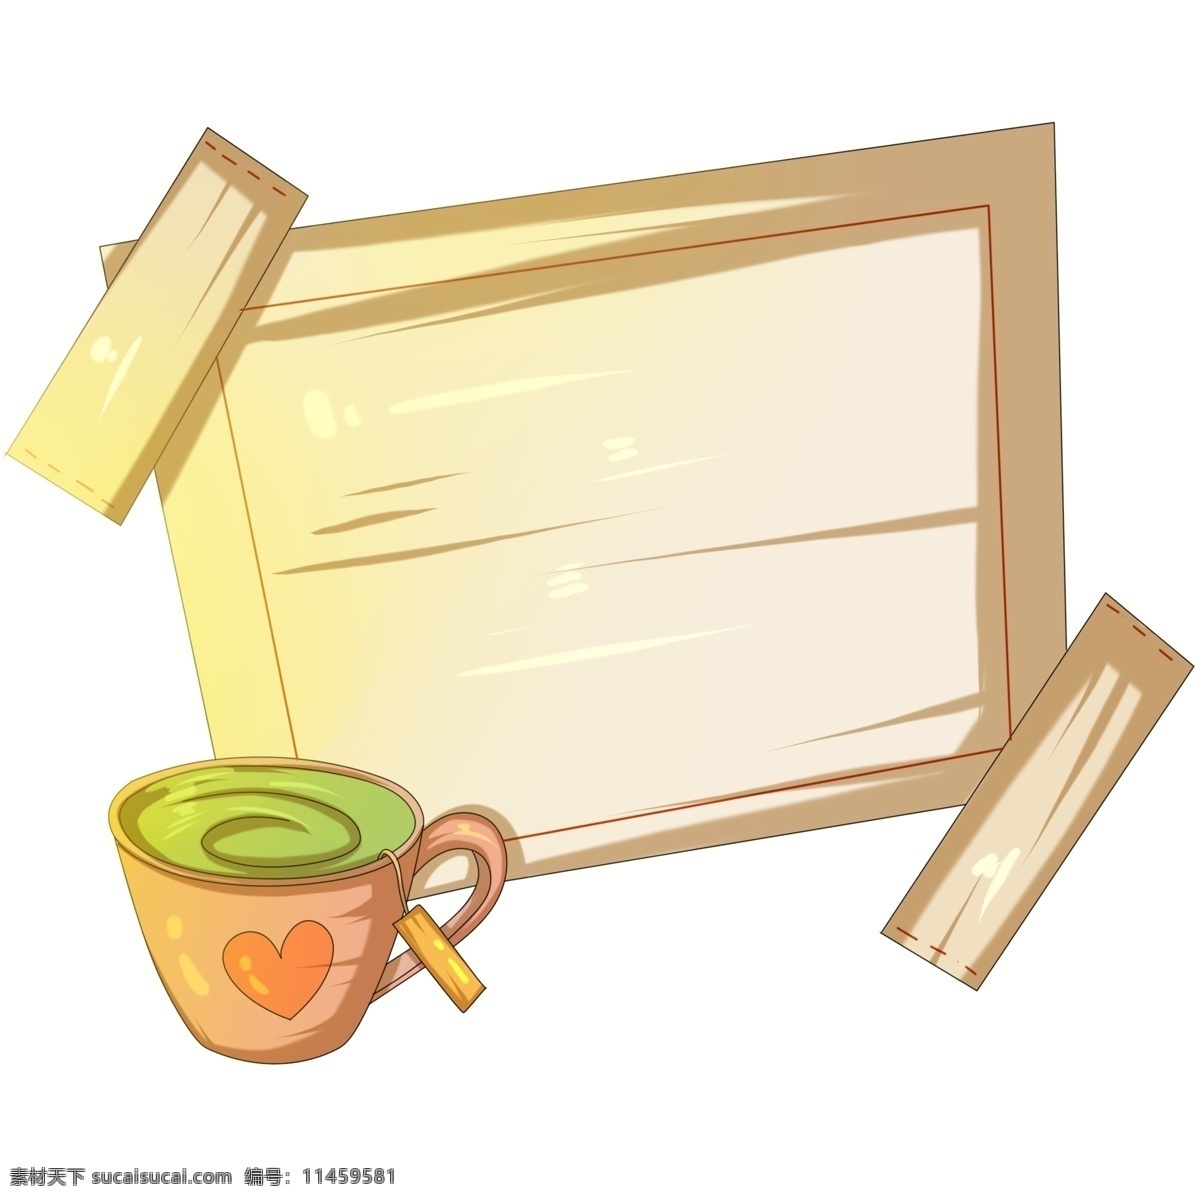 爱心 绿茶 边框 插画 爱心绿茶边框 粉色的杯子 饮料 饮品 公示栏 字幕框 黄色边框 可爱的边框 手绘边框插画